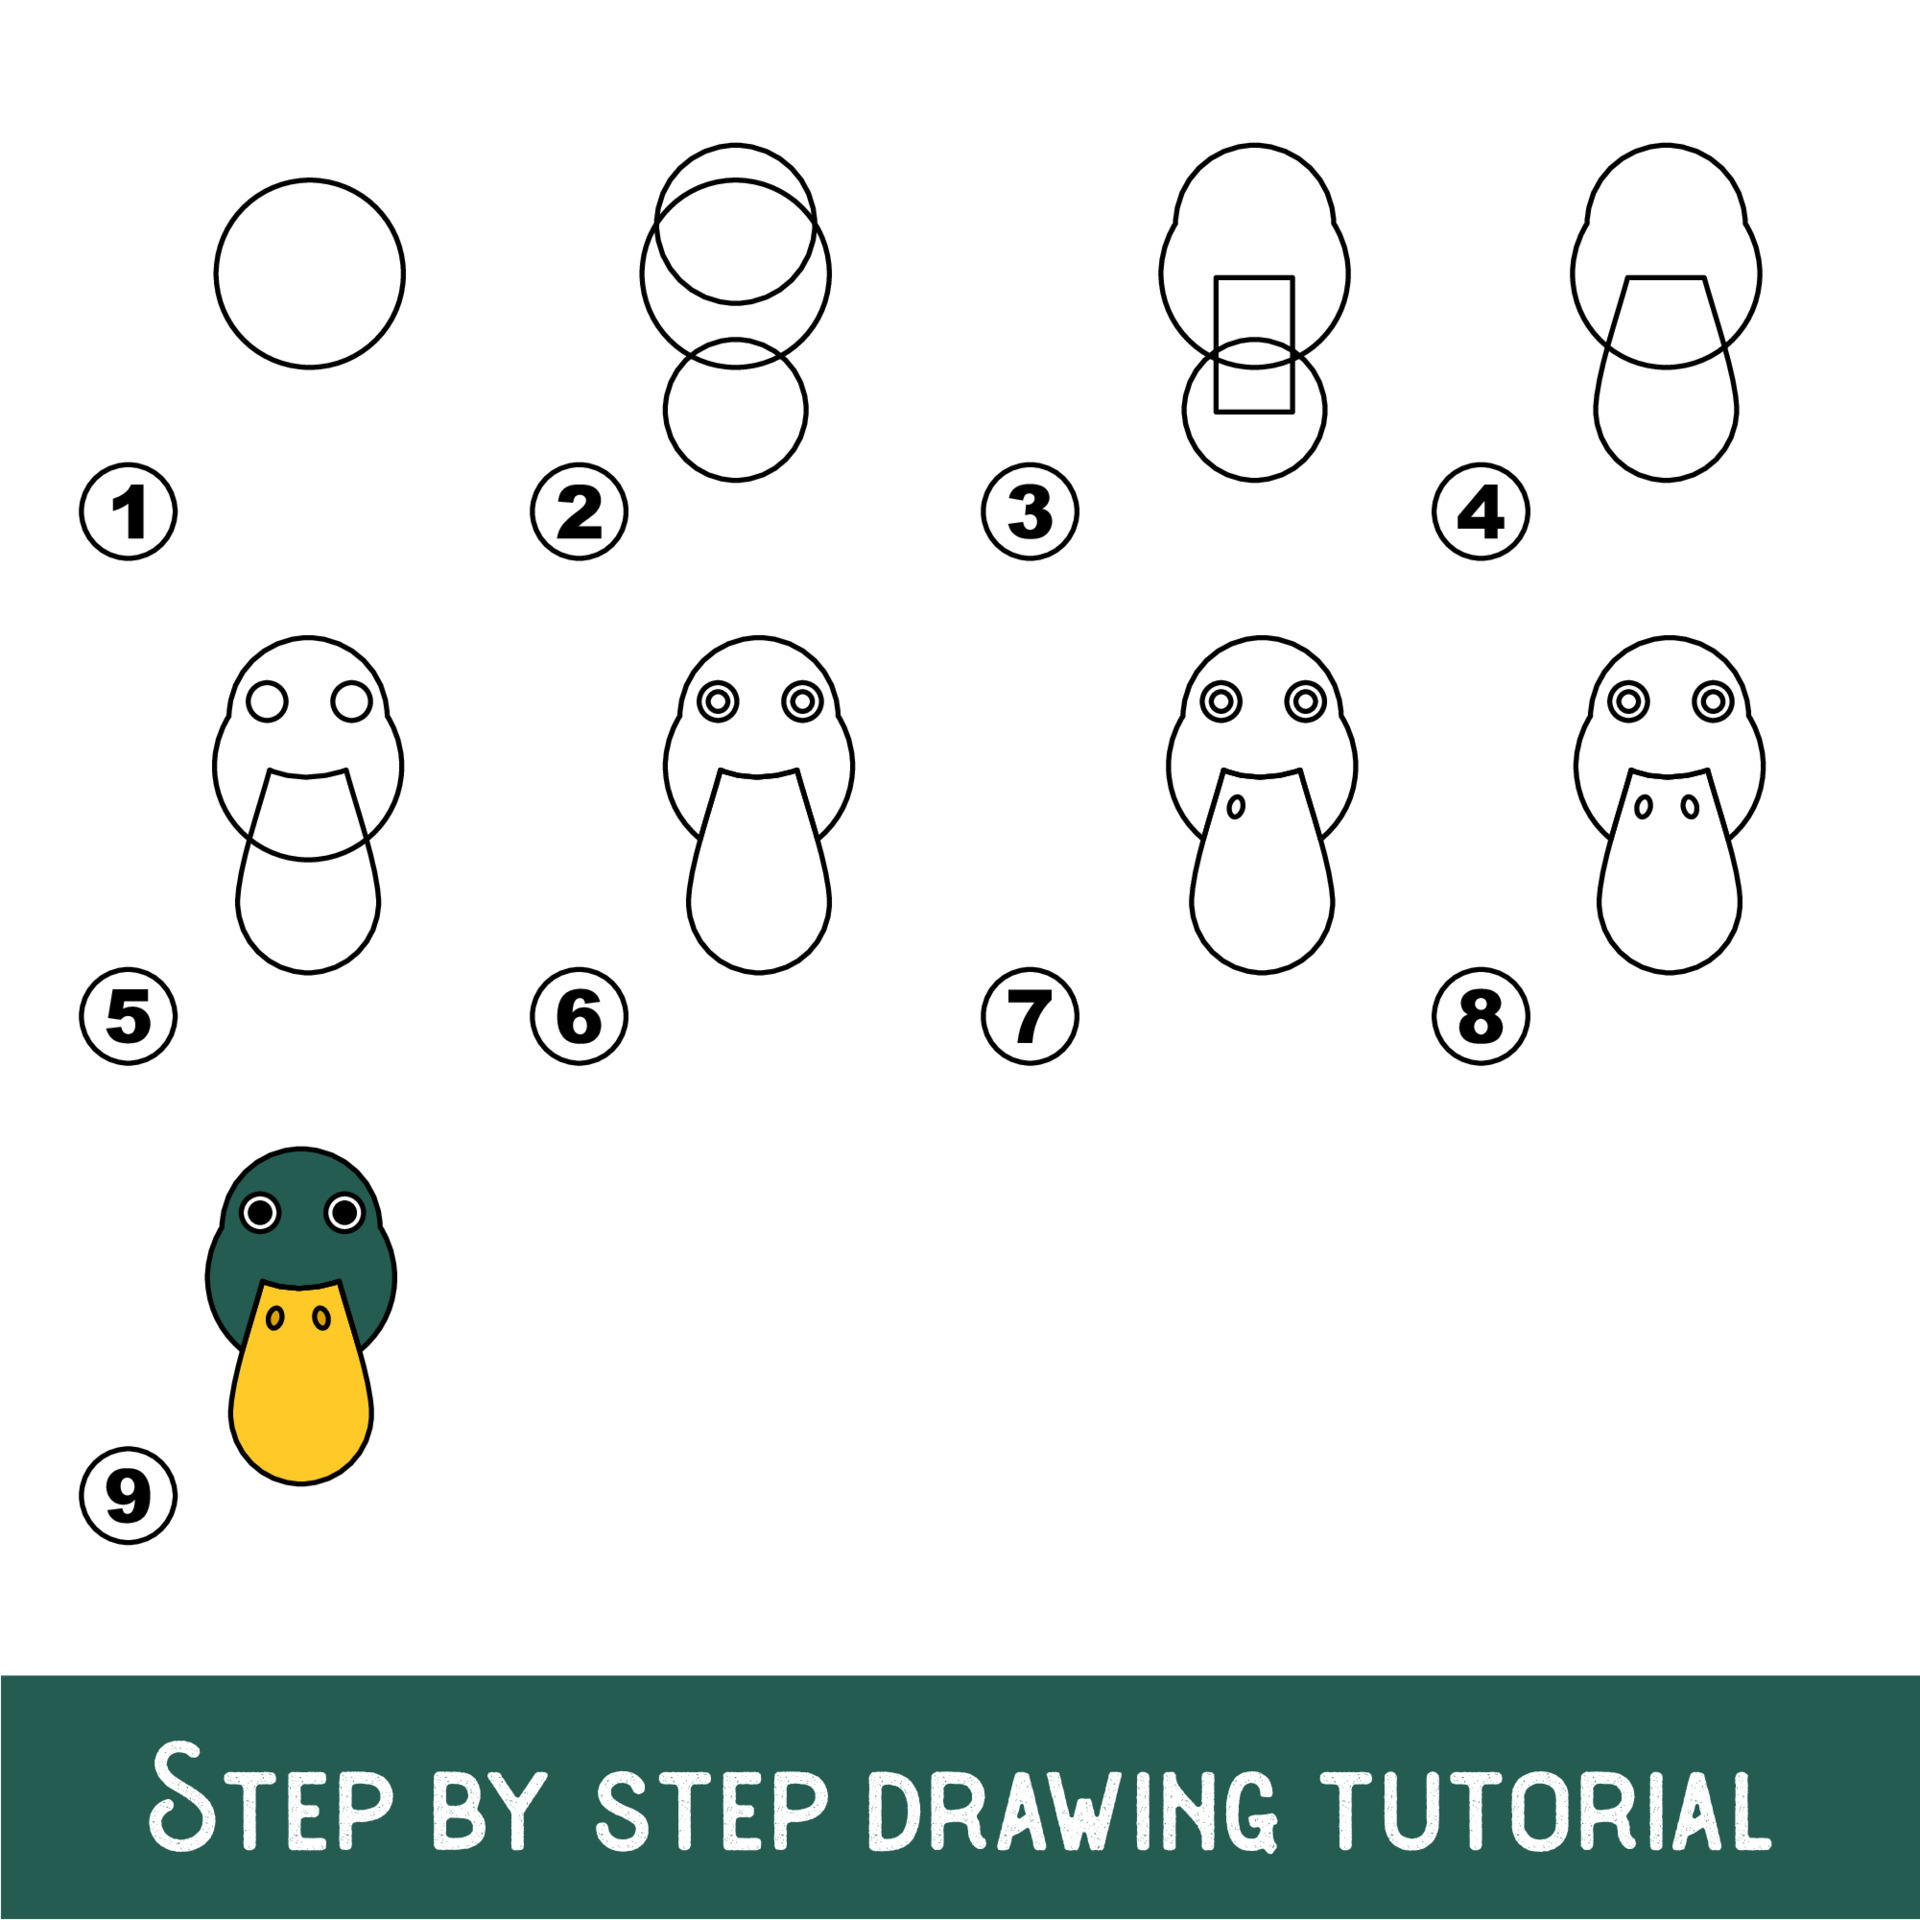 Jogo Infantil Para Desenvolver Habilidade De Desenho Com Nível De Jogo Fácil  Para Crianças Pré-escolares Desenhando Tutorial Para Ilustração Stock -  Ilustração de enigma, isolado: 233490421